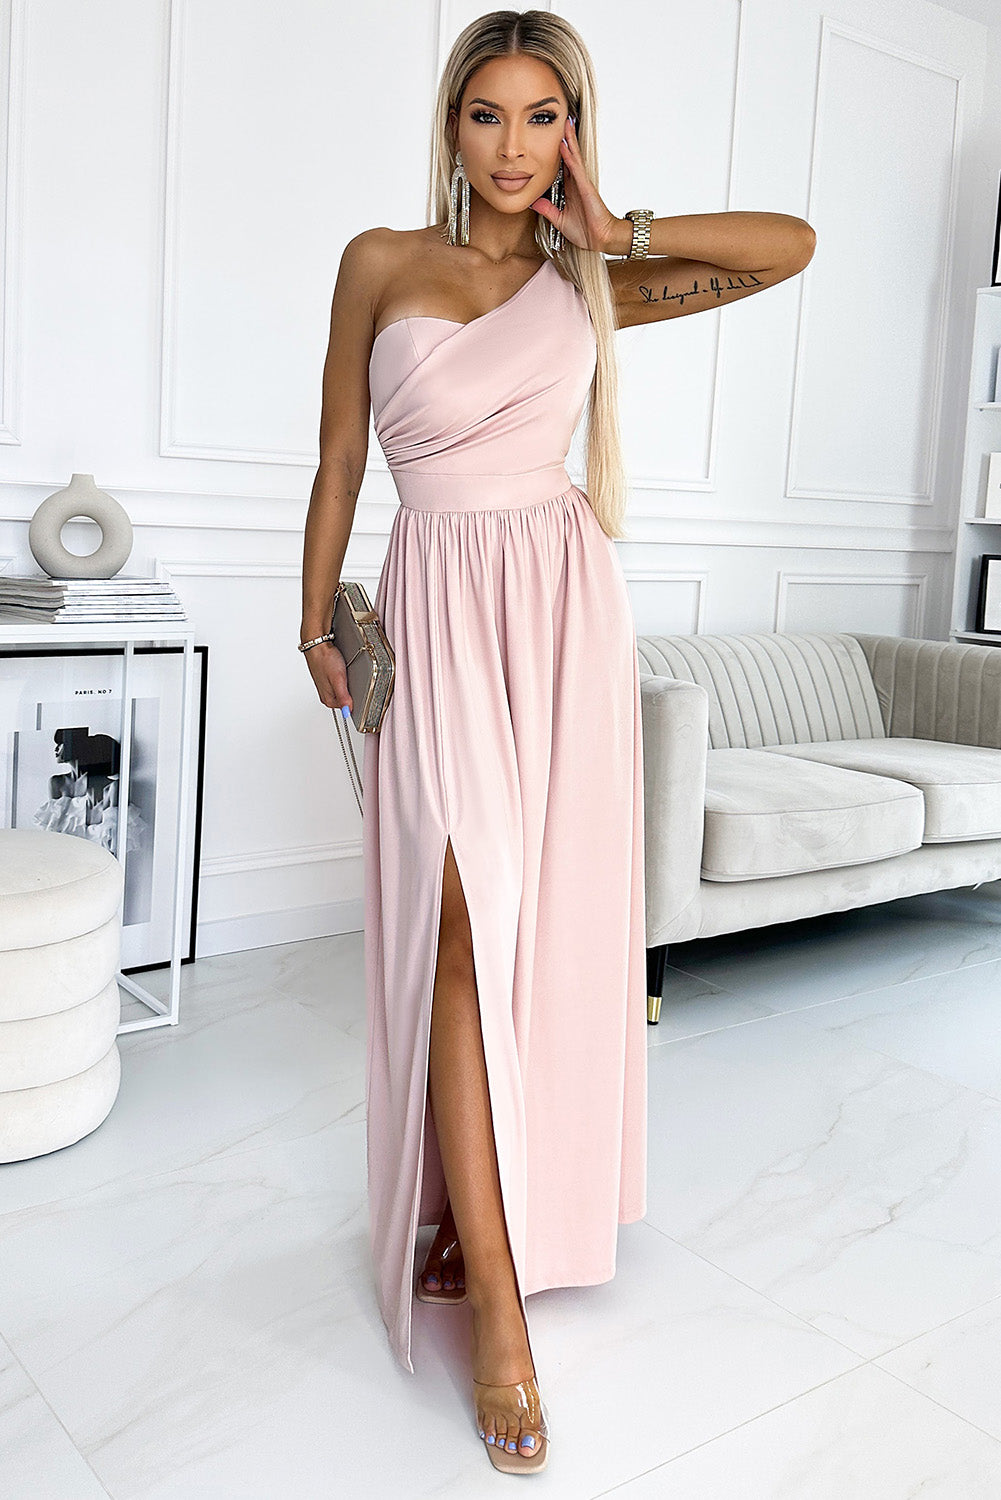 Blush Pink One Shoulder Maxi Dress with Side Slit